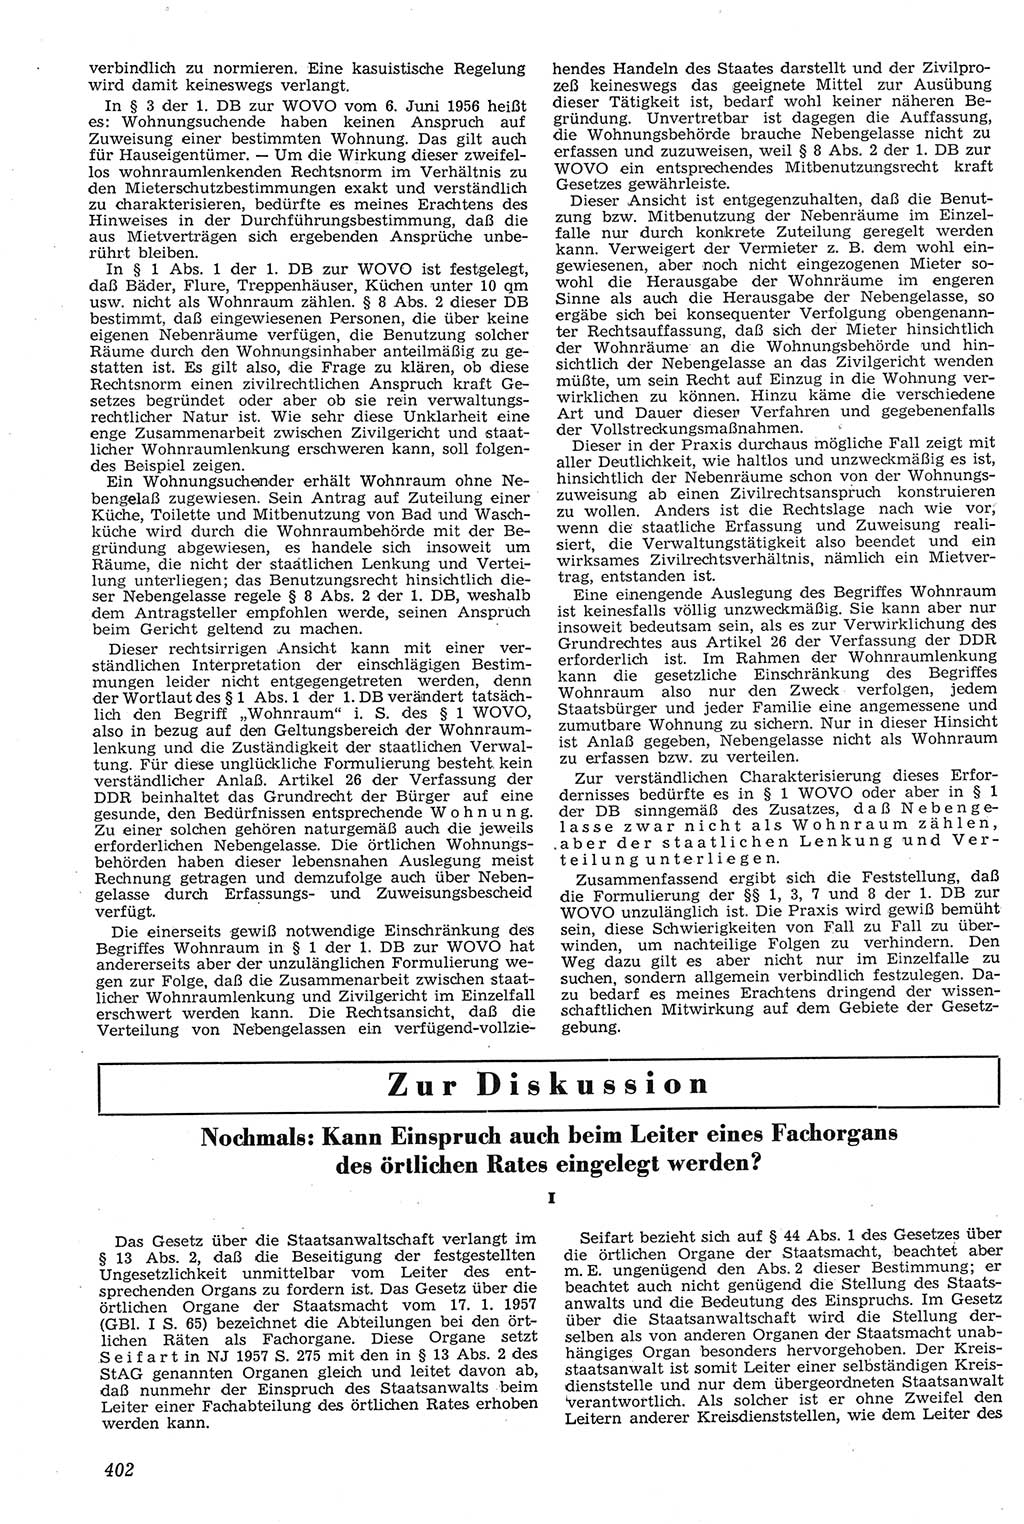 Neue Justiz (NJ), Zeitschrift für Recht und Rechtswissenschaft [Deutsche Demokratische Republik (DDR)], 11. Jahrgang 1957, Seite 402 (NJ DDR 1957, S. 402)